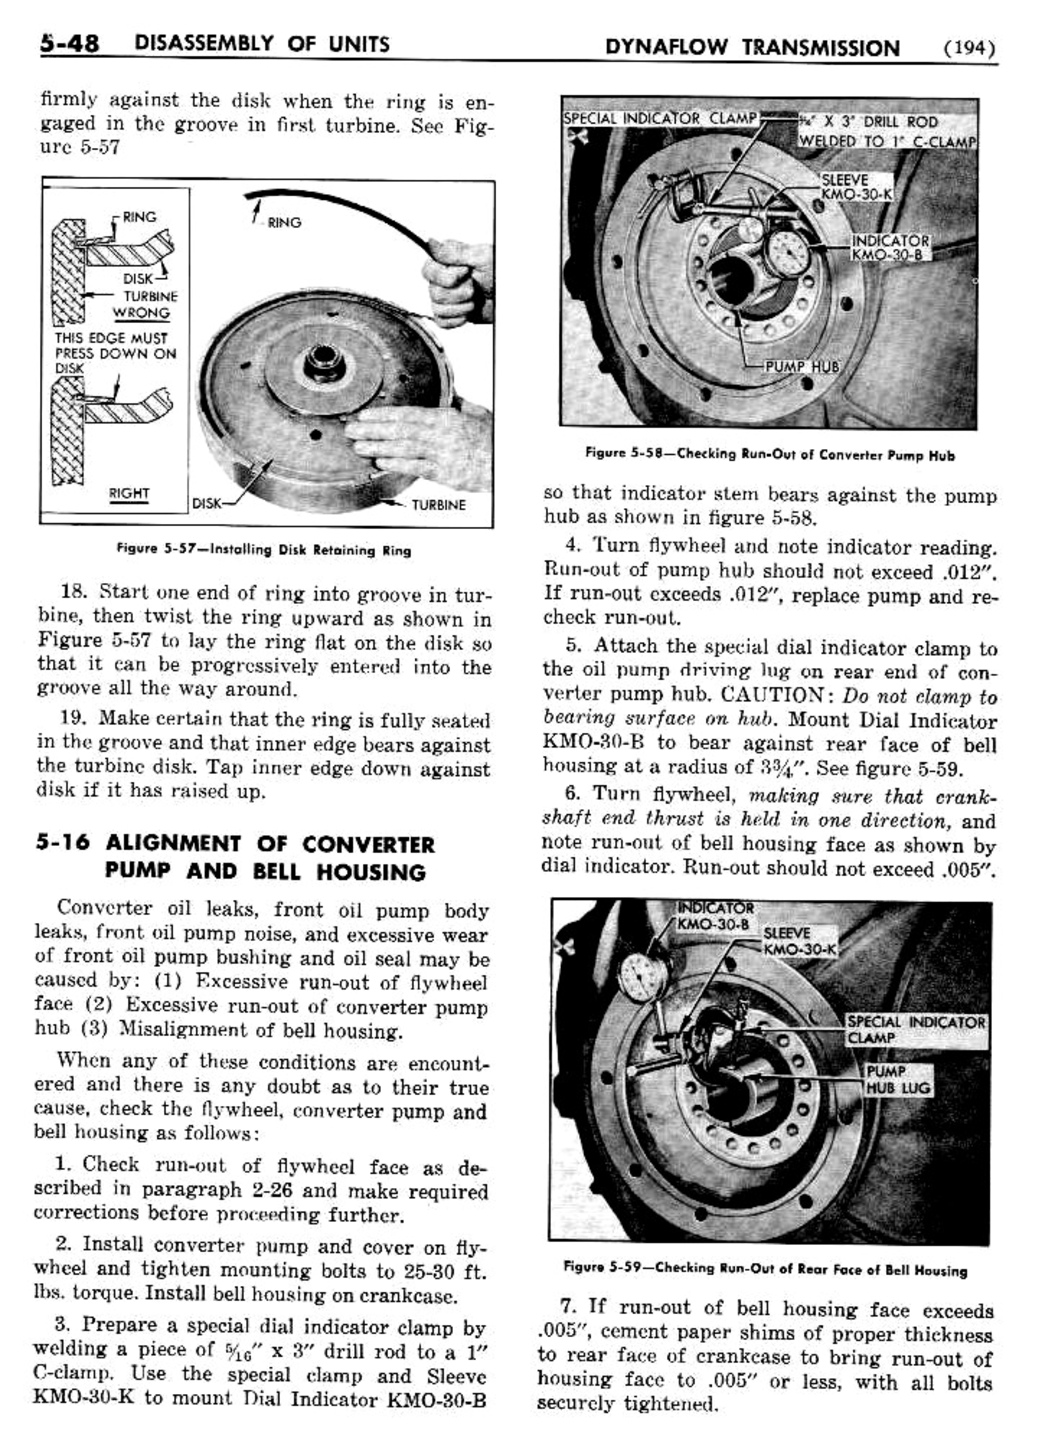 n_06 1956 Buick Shop Manual - Dynaflow-048-048.jpg